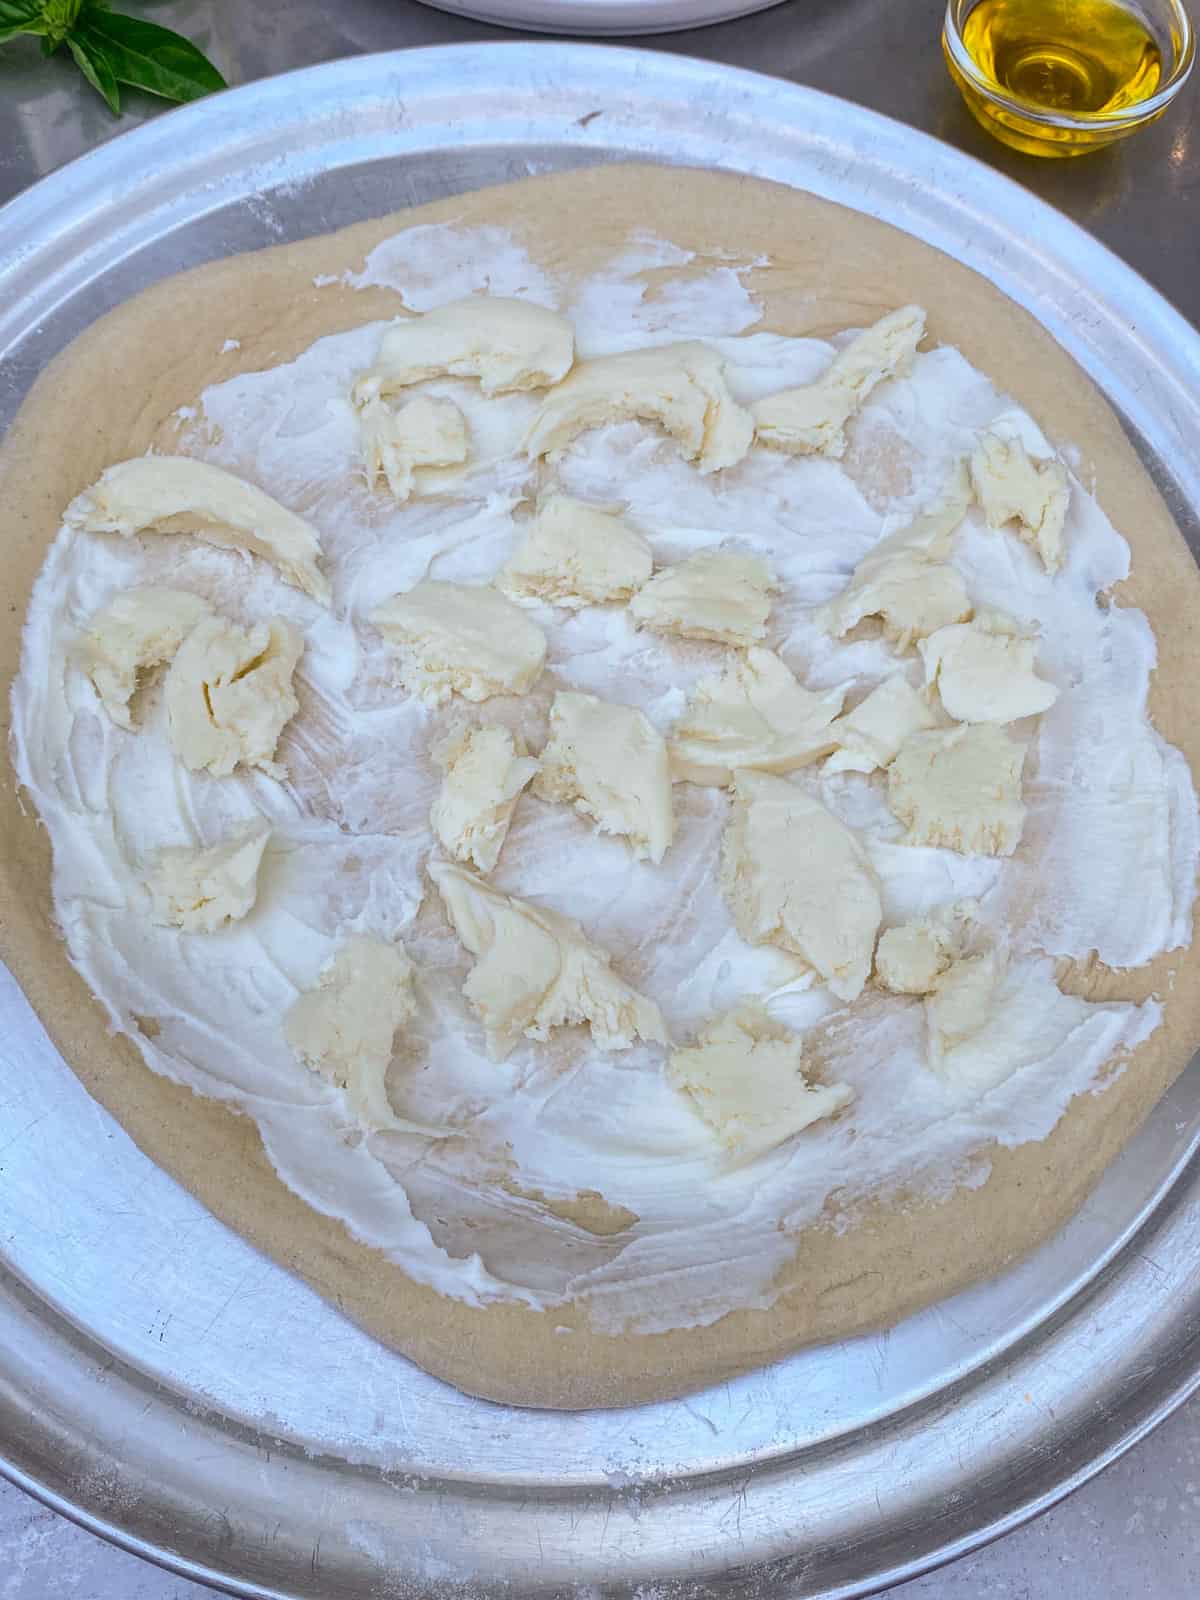 Spread a thin layer of creme fraiche onto the pizza dough and layer mozzarella cheese.